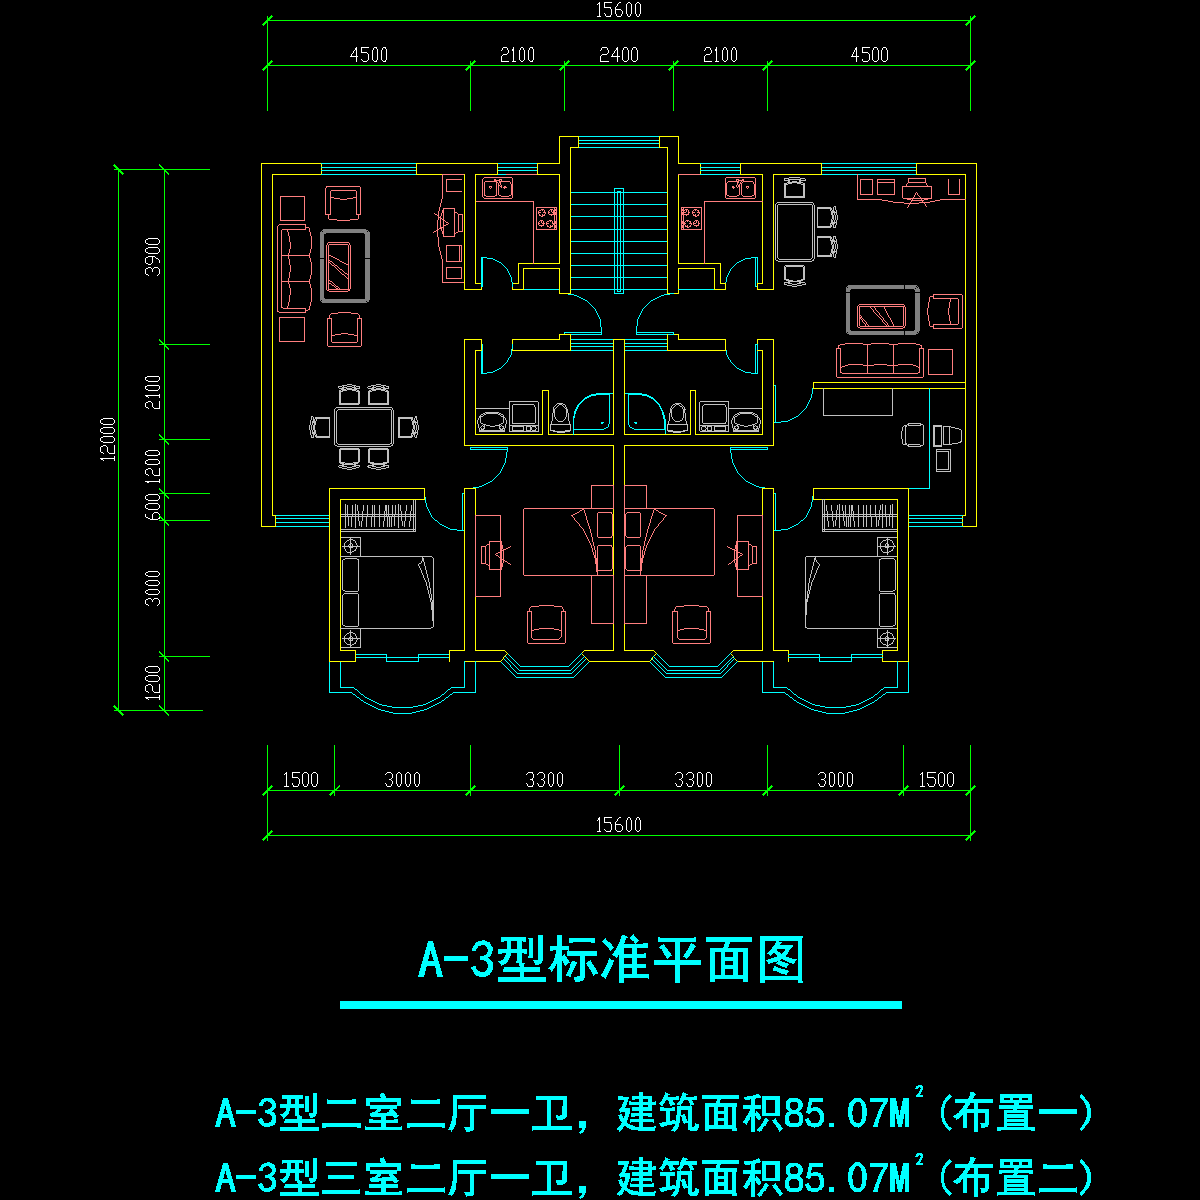 板式多层一梯二户二室二厅一卫、三室二厅一卫户型CAD图纸(85/85)